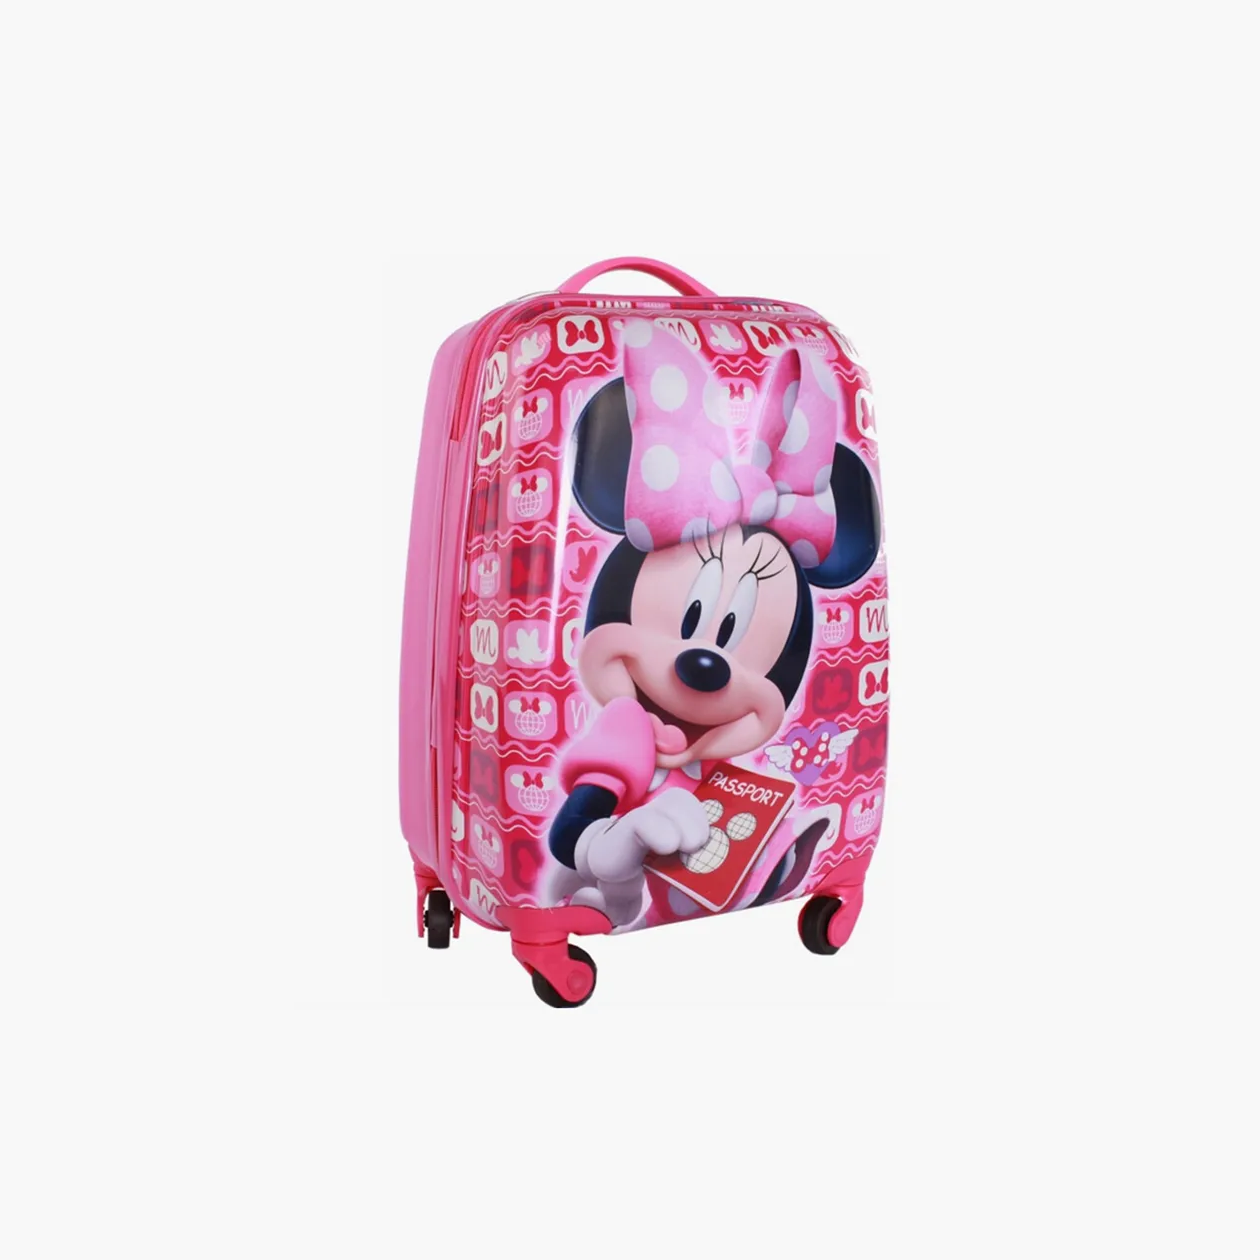 Детский чемодан можно взять с собой в багаж бесплатно, даже если ребенок летит без места. Источник: market.yandex.ru